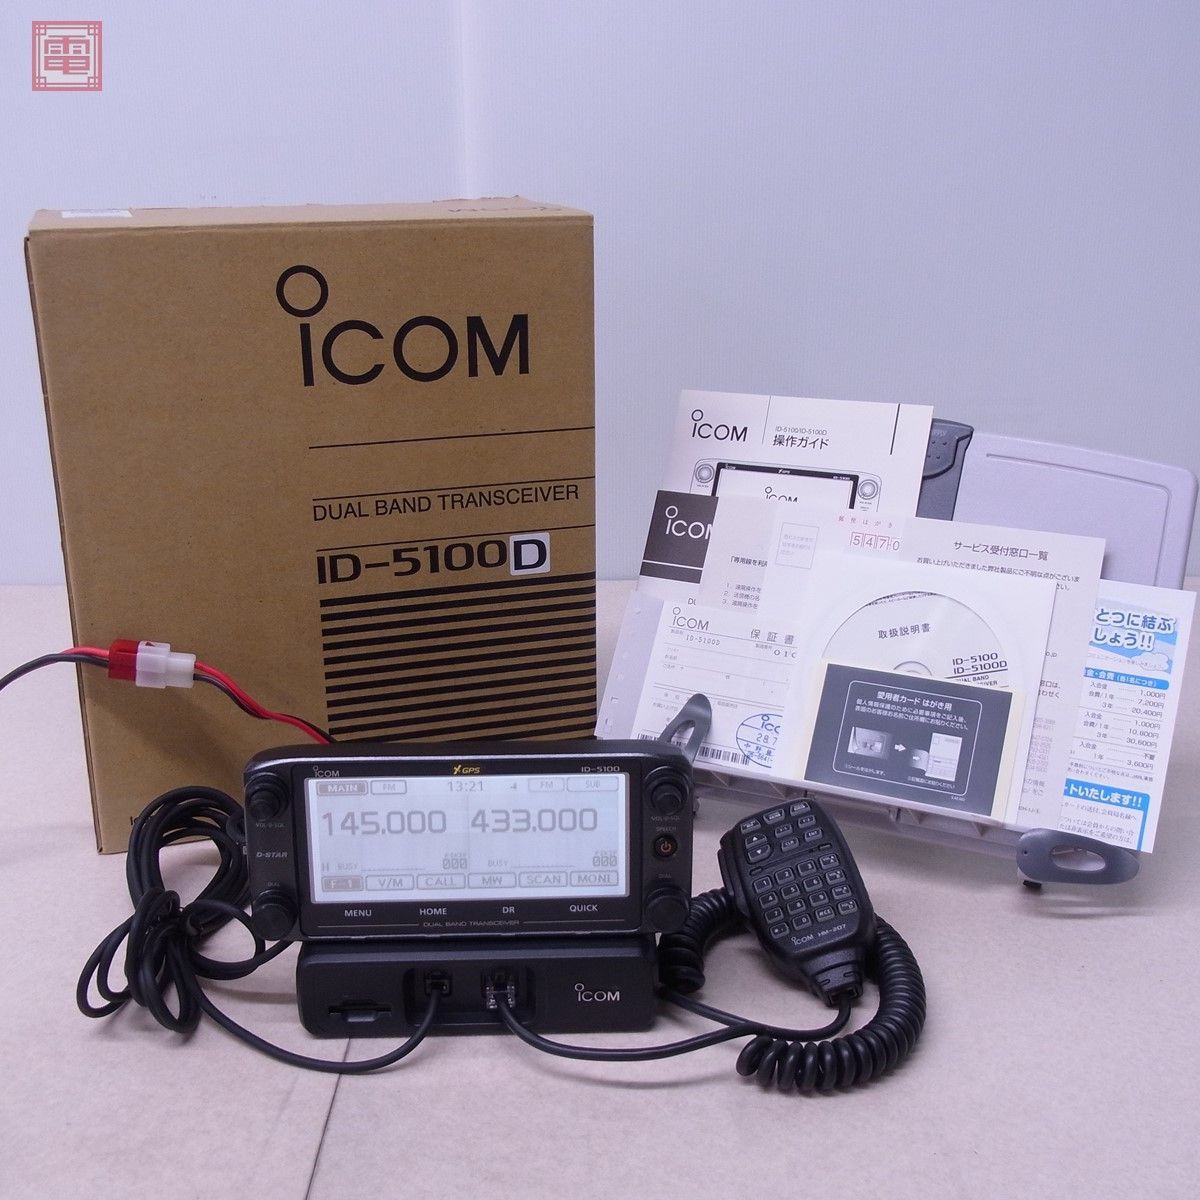 ヤフオク! -「icom id-5100」(アマチュア無線) の落札相場・落札価格